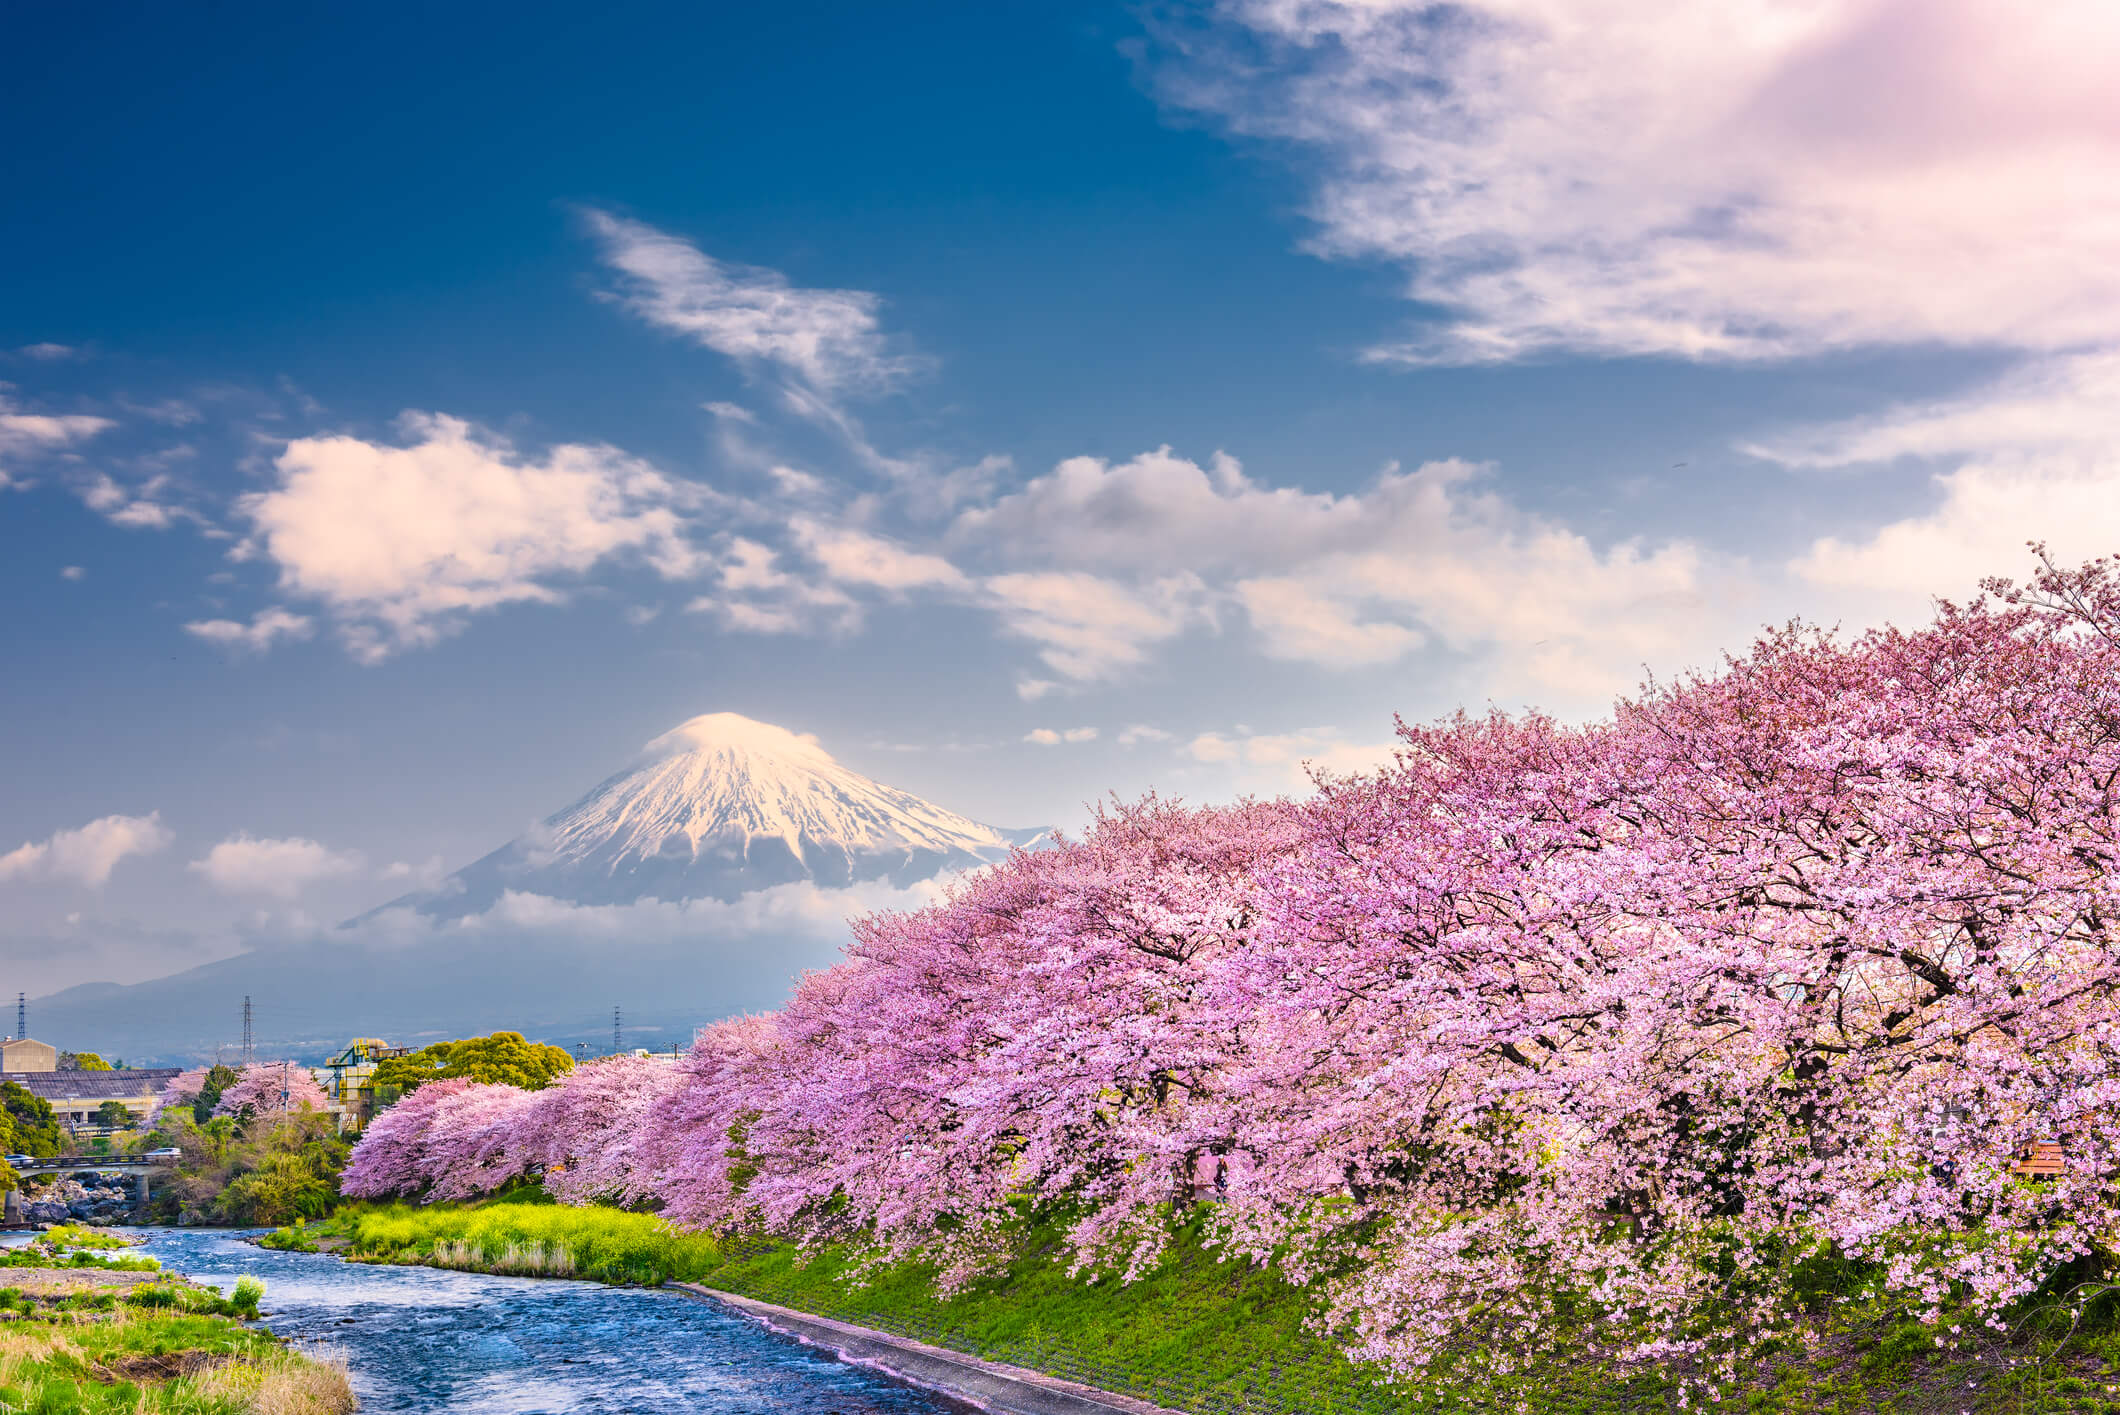 Mount Fuji Japan in April